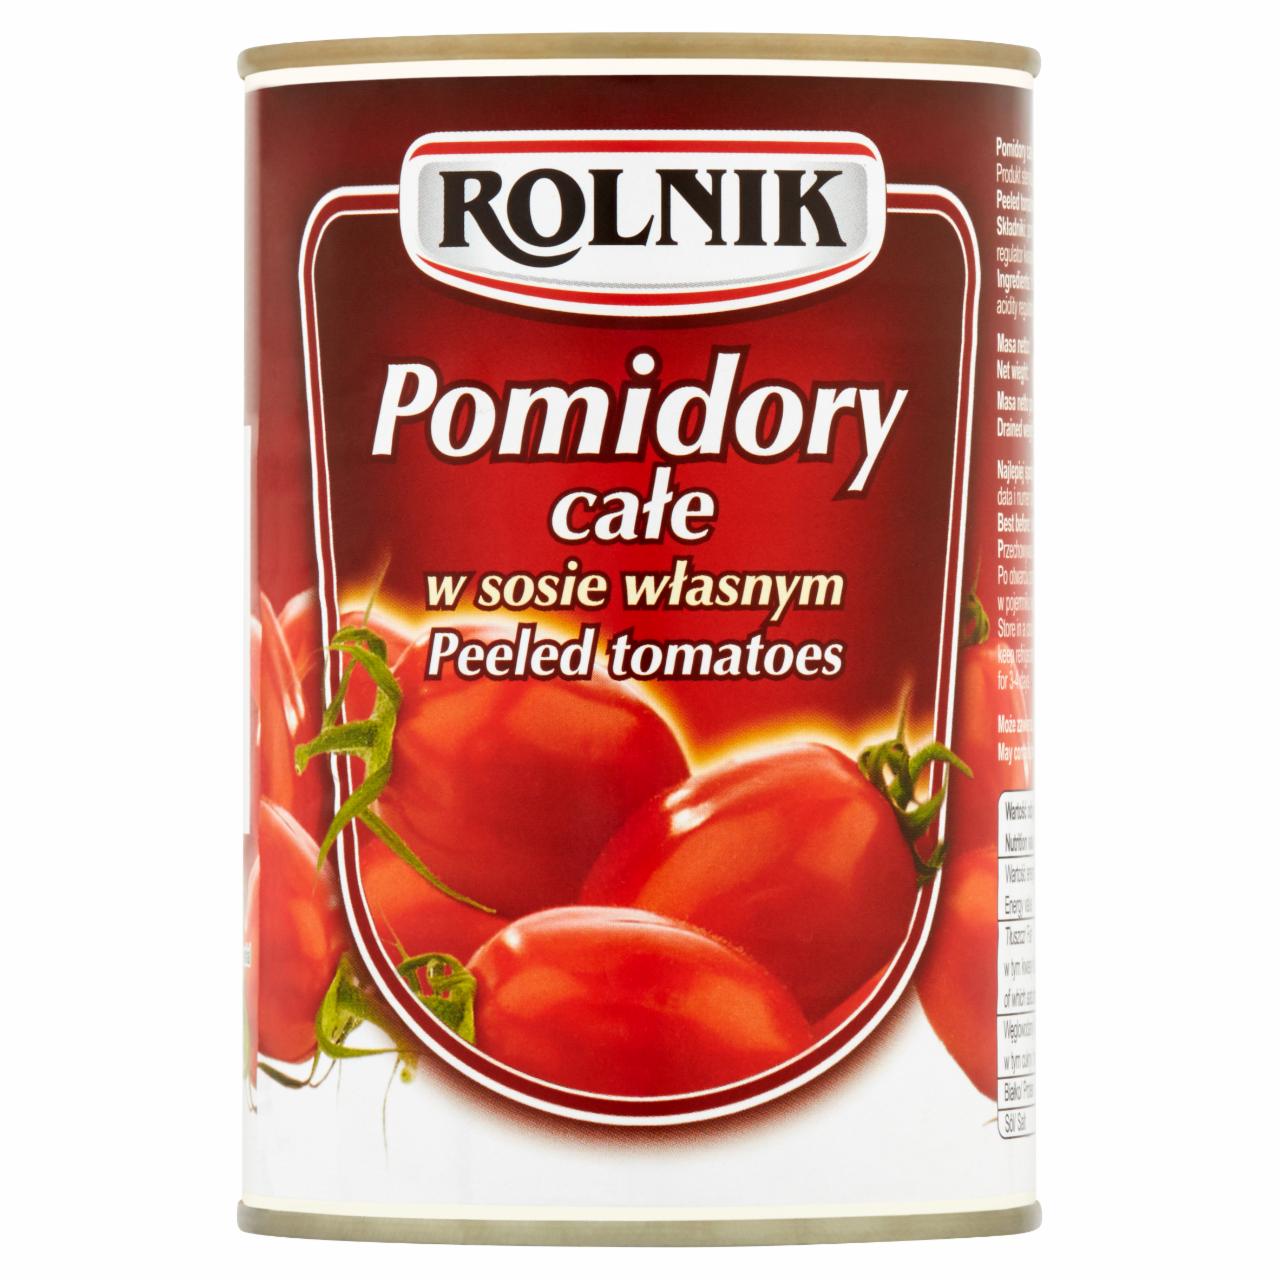 Zdjęcia - Rolnik Pomidory całe 400 g